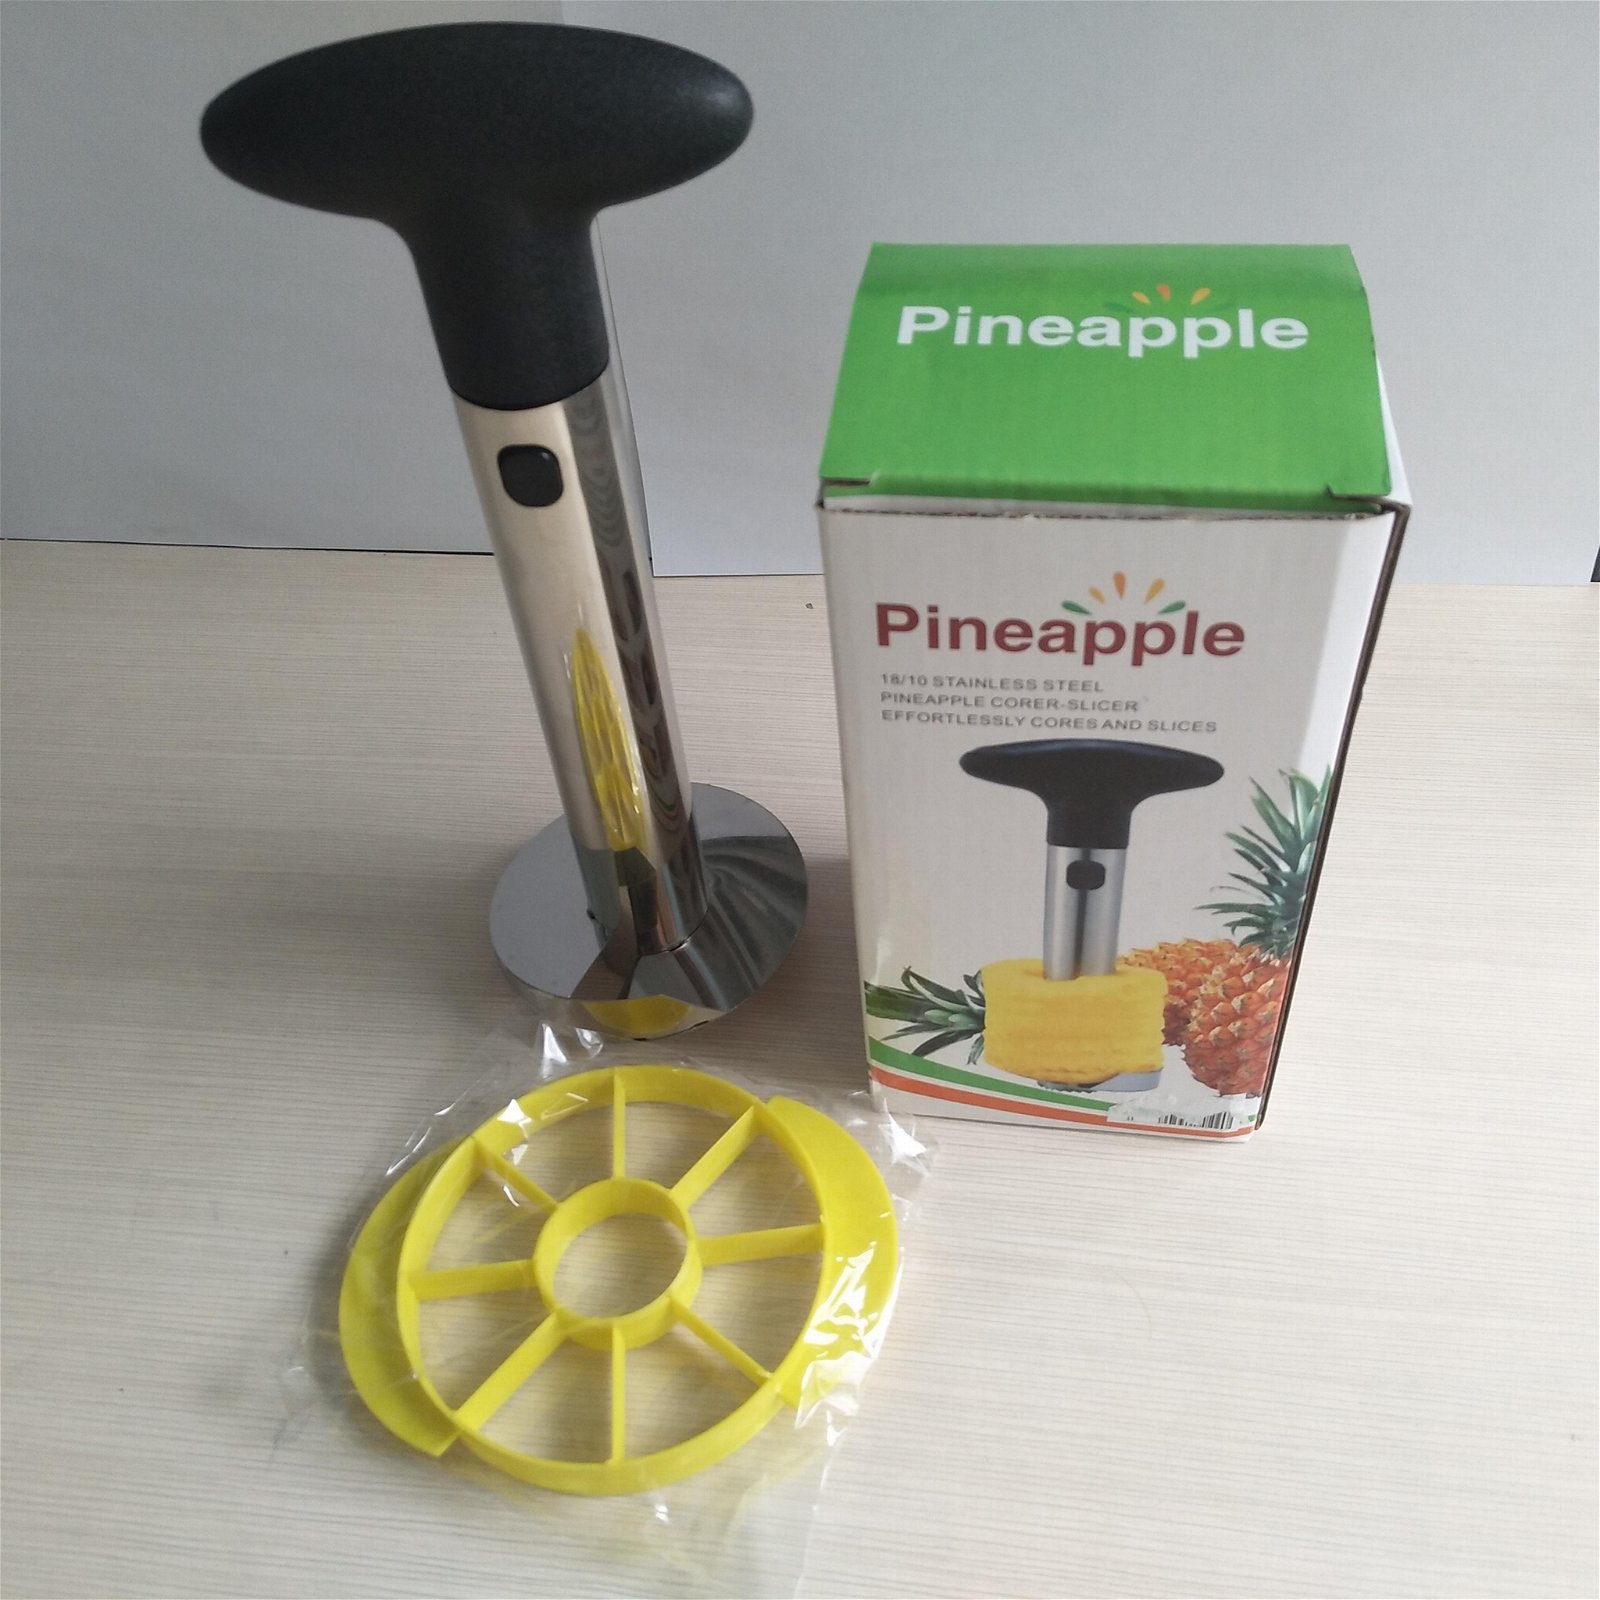 pineapple corer and slicer amazon best Stainless Steel pineapple peeler cutter E